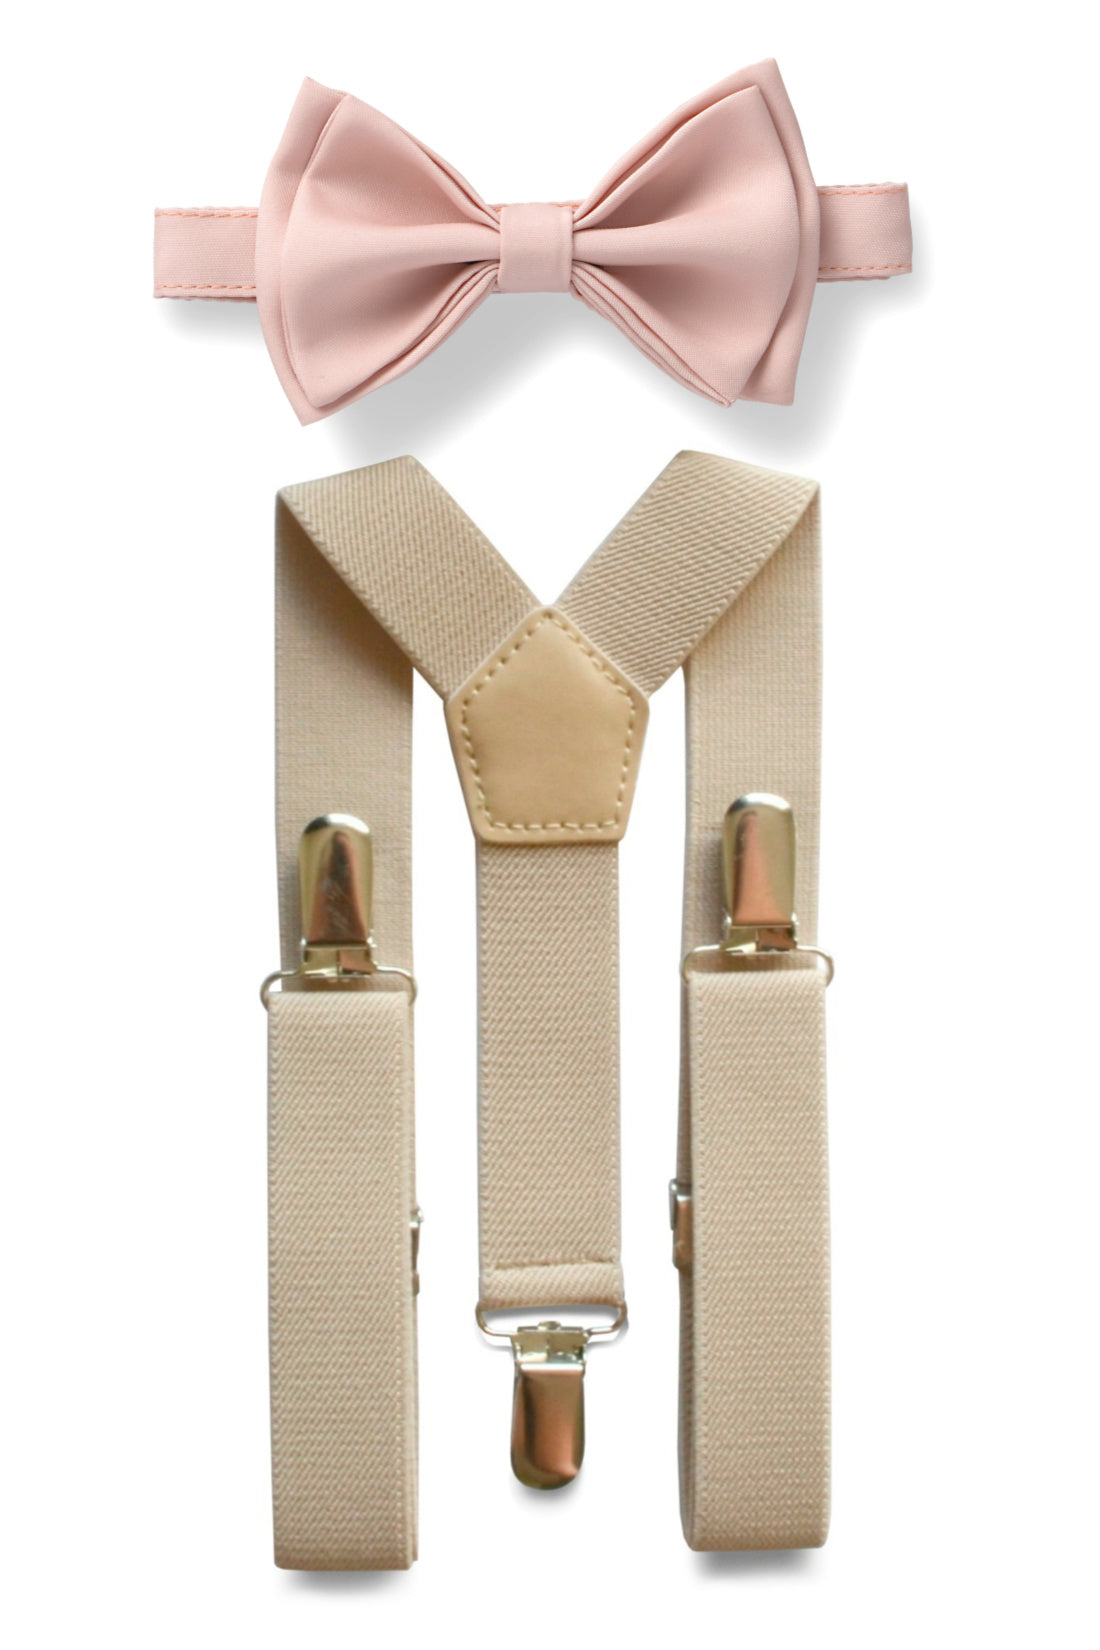 Beige Suspenders & Blush Bow Tie